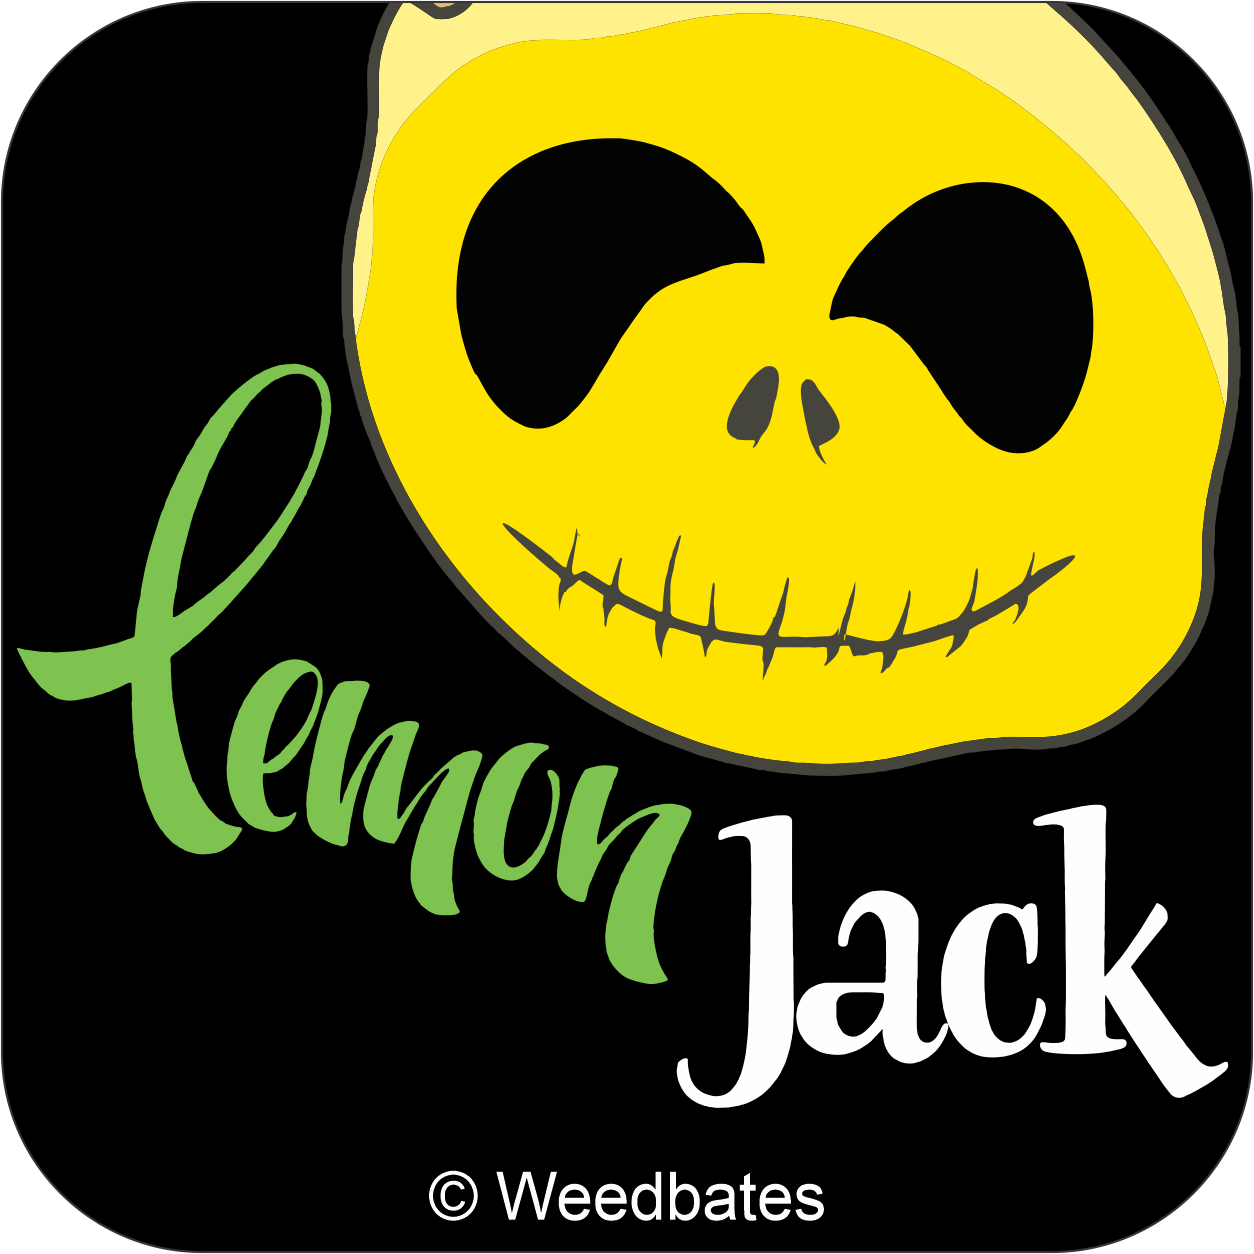 Lemon Jack strain